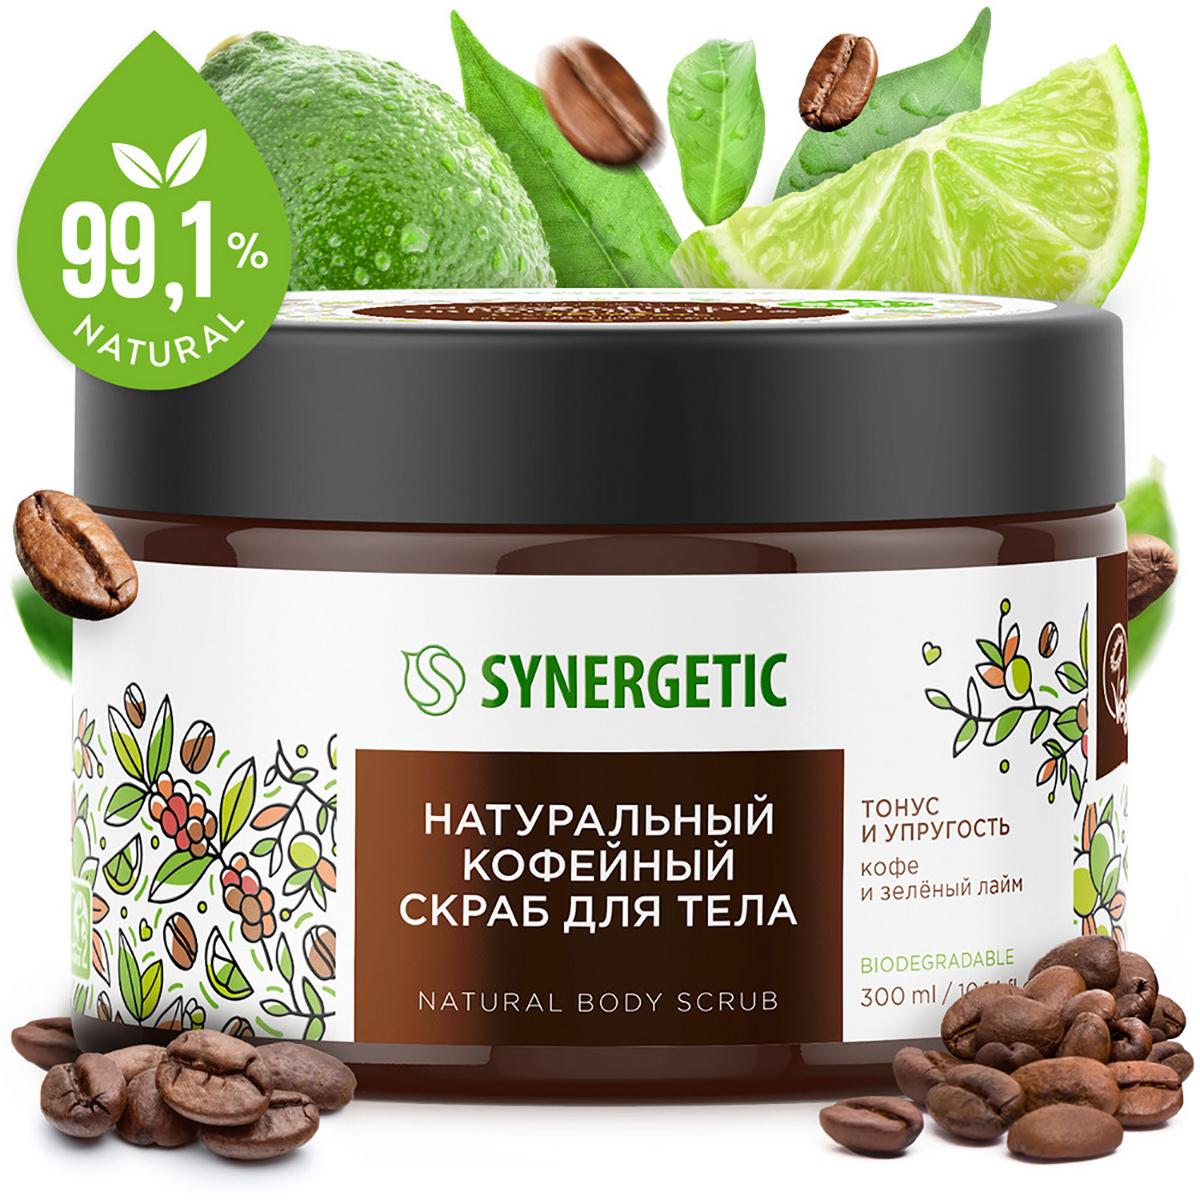 Натуральный кофейный скраб для тела Тонус и упругость, Кофе и зеленый лайм, 300 мл, Synergetic